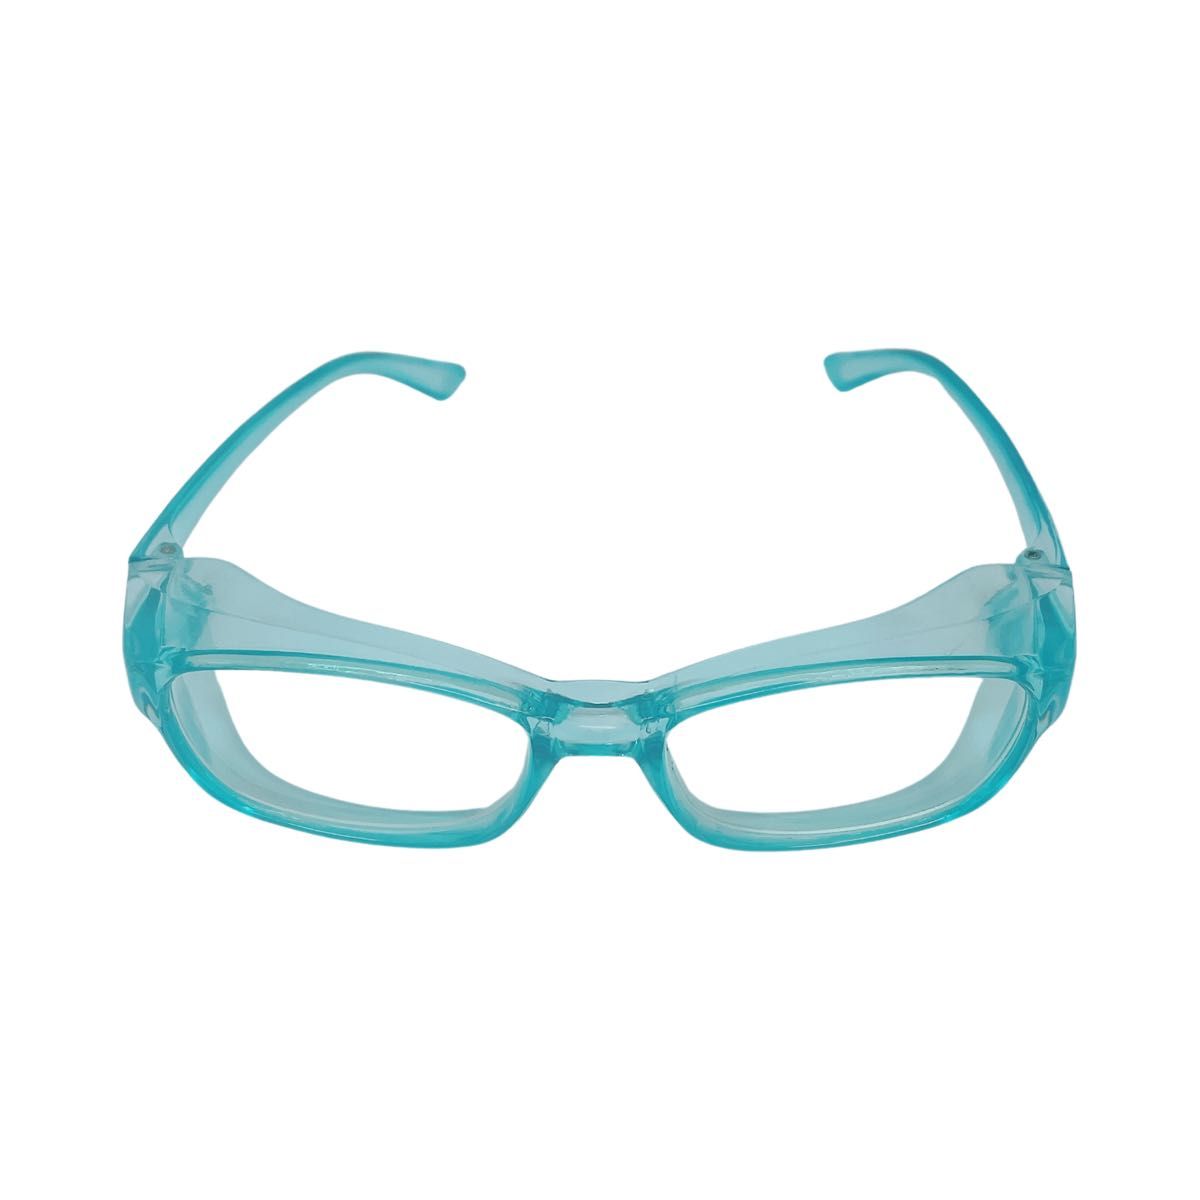 花粉メガネ キッズ用 パステルブルー UVカットめがね ゴーグル 透明 小学生 花粉対策眼鏡 保護 防塵 花粉症対策 紫外線カット